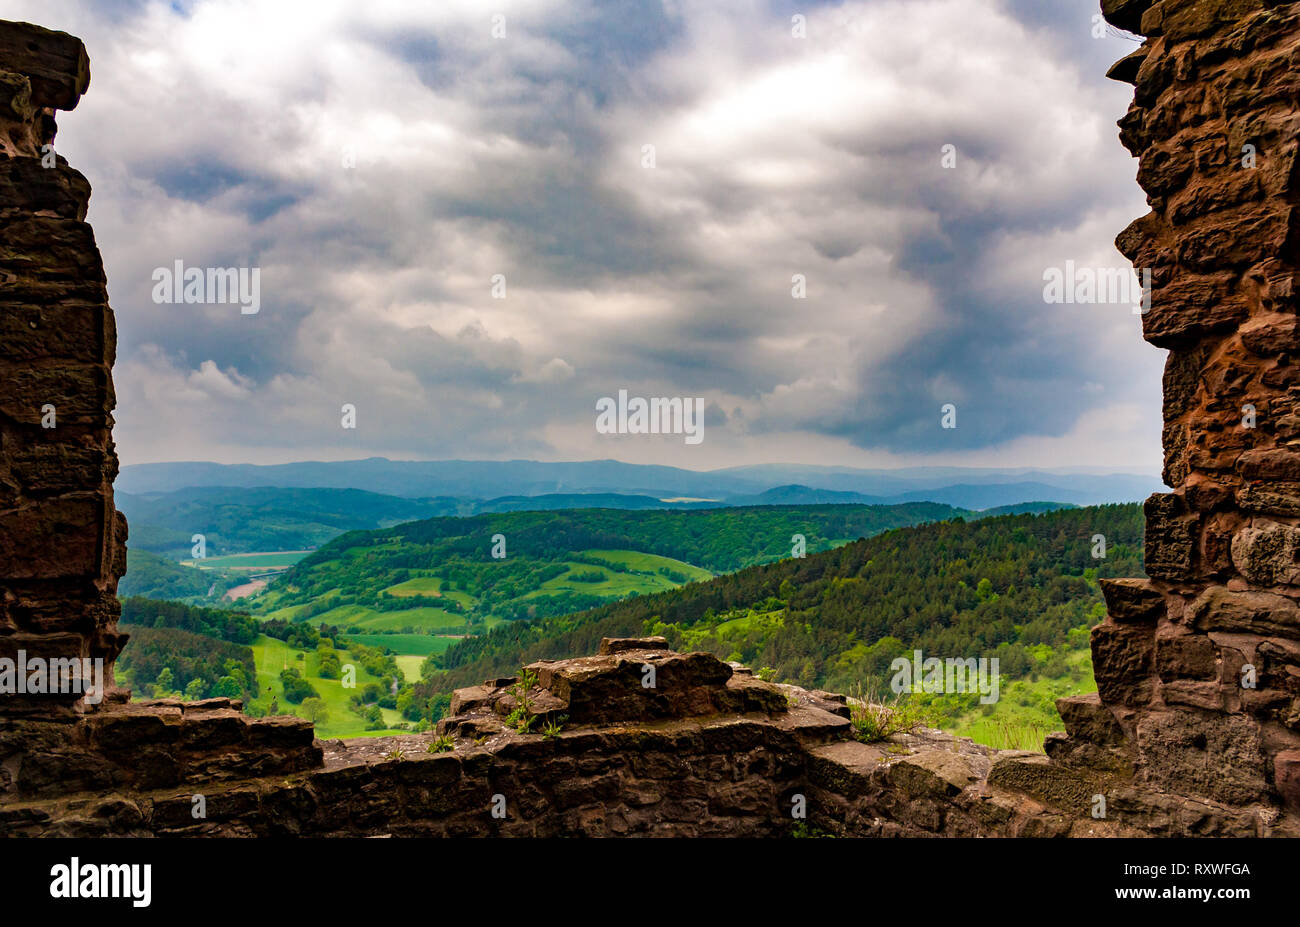 Herrliche Panoramasicht auf die Landschaft in der Mitte Deutschlands, eingerahmt vom verfallenen Mauern des berühmten hanstein Burg, eine der größten Burgruinen in... Stockfoto